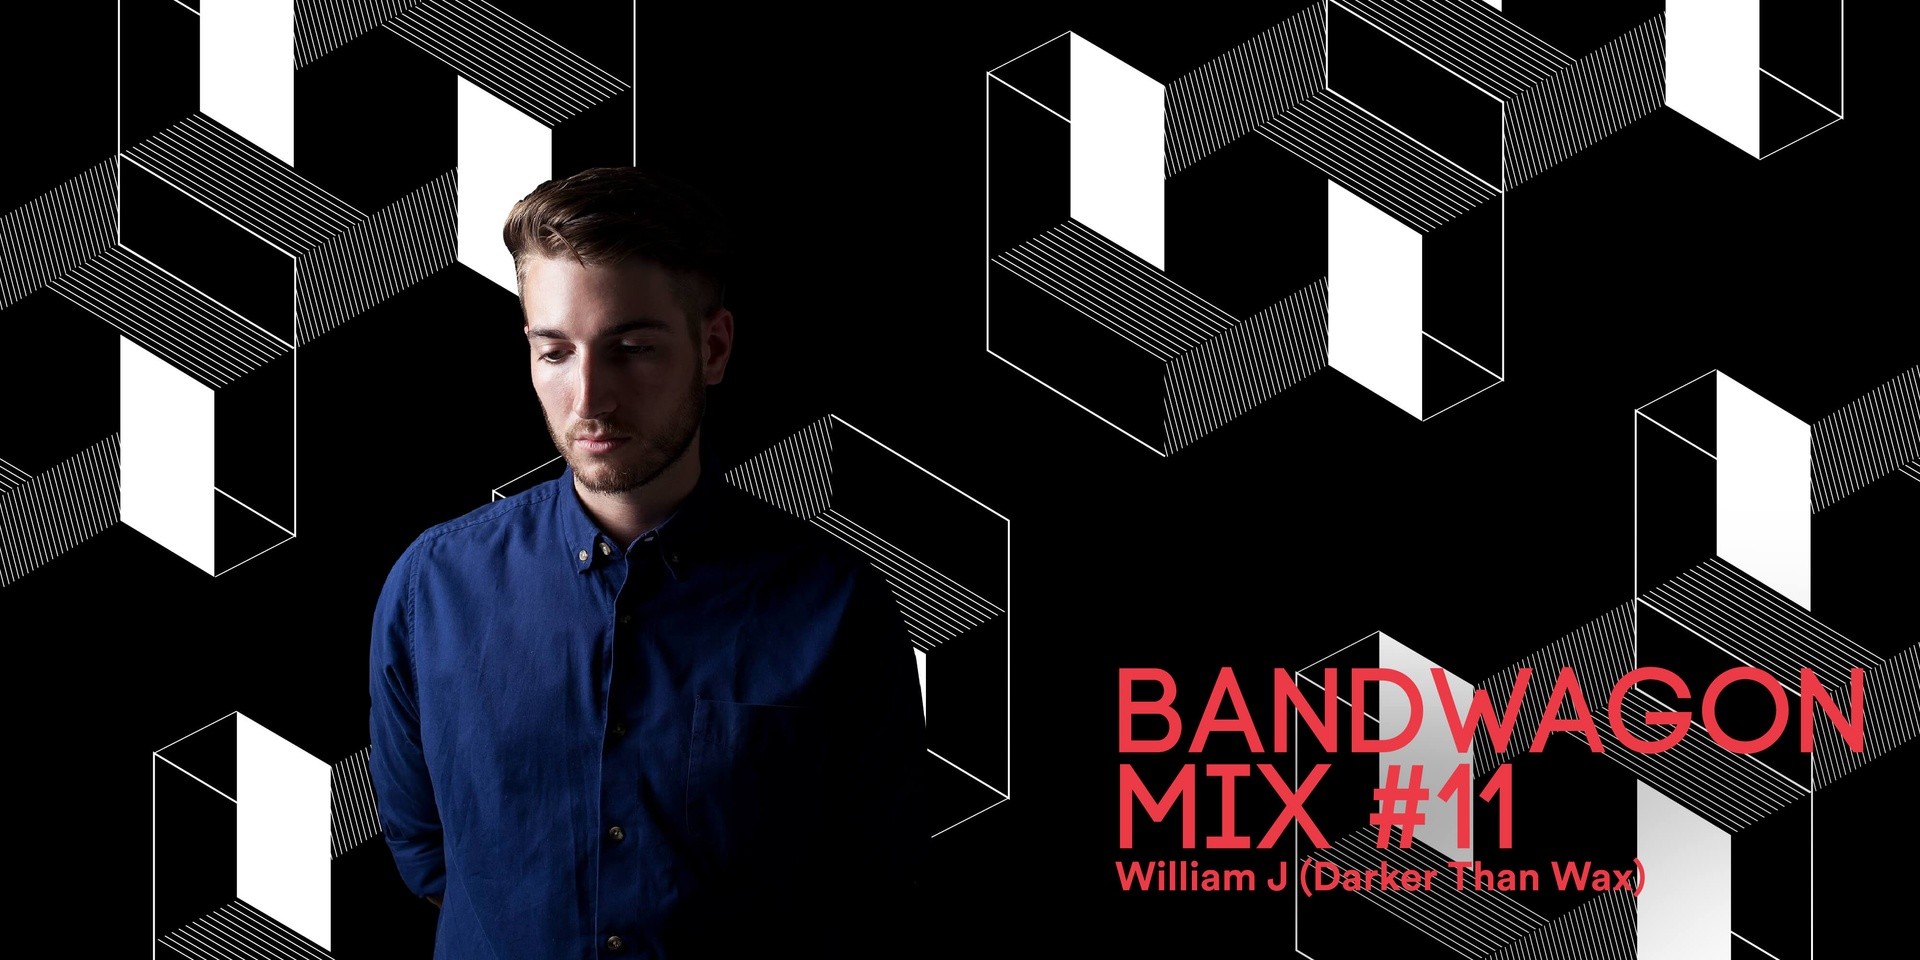 Bandwagon Mix #11: William J (Darker Than Wax)